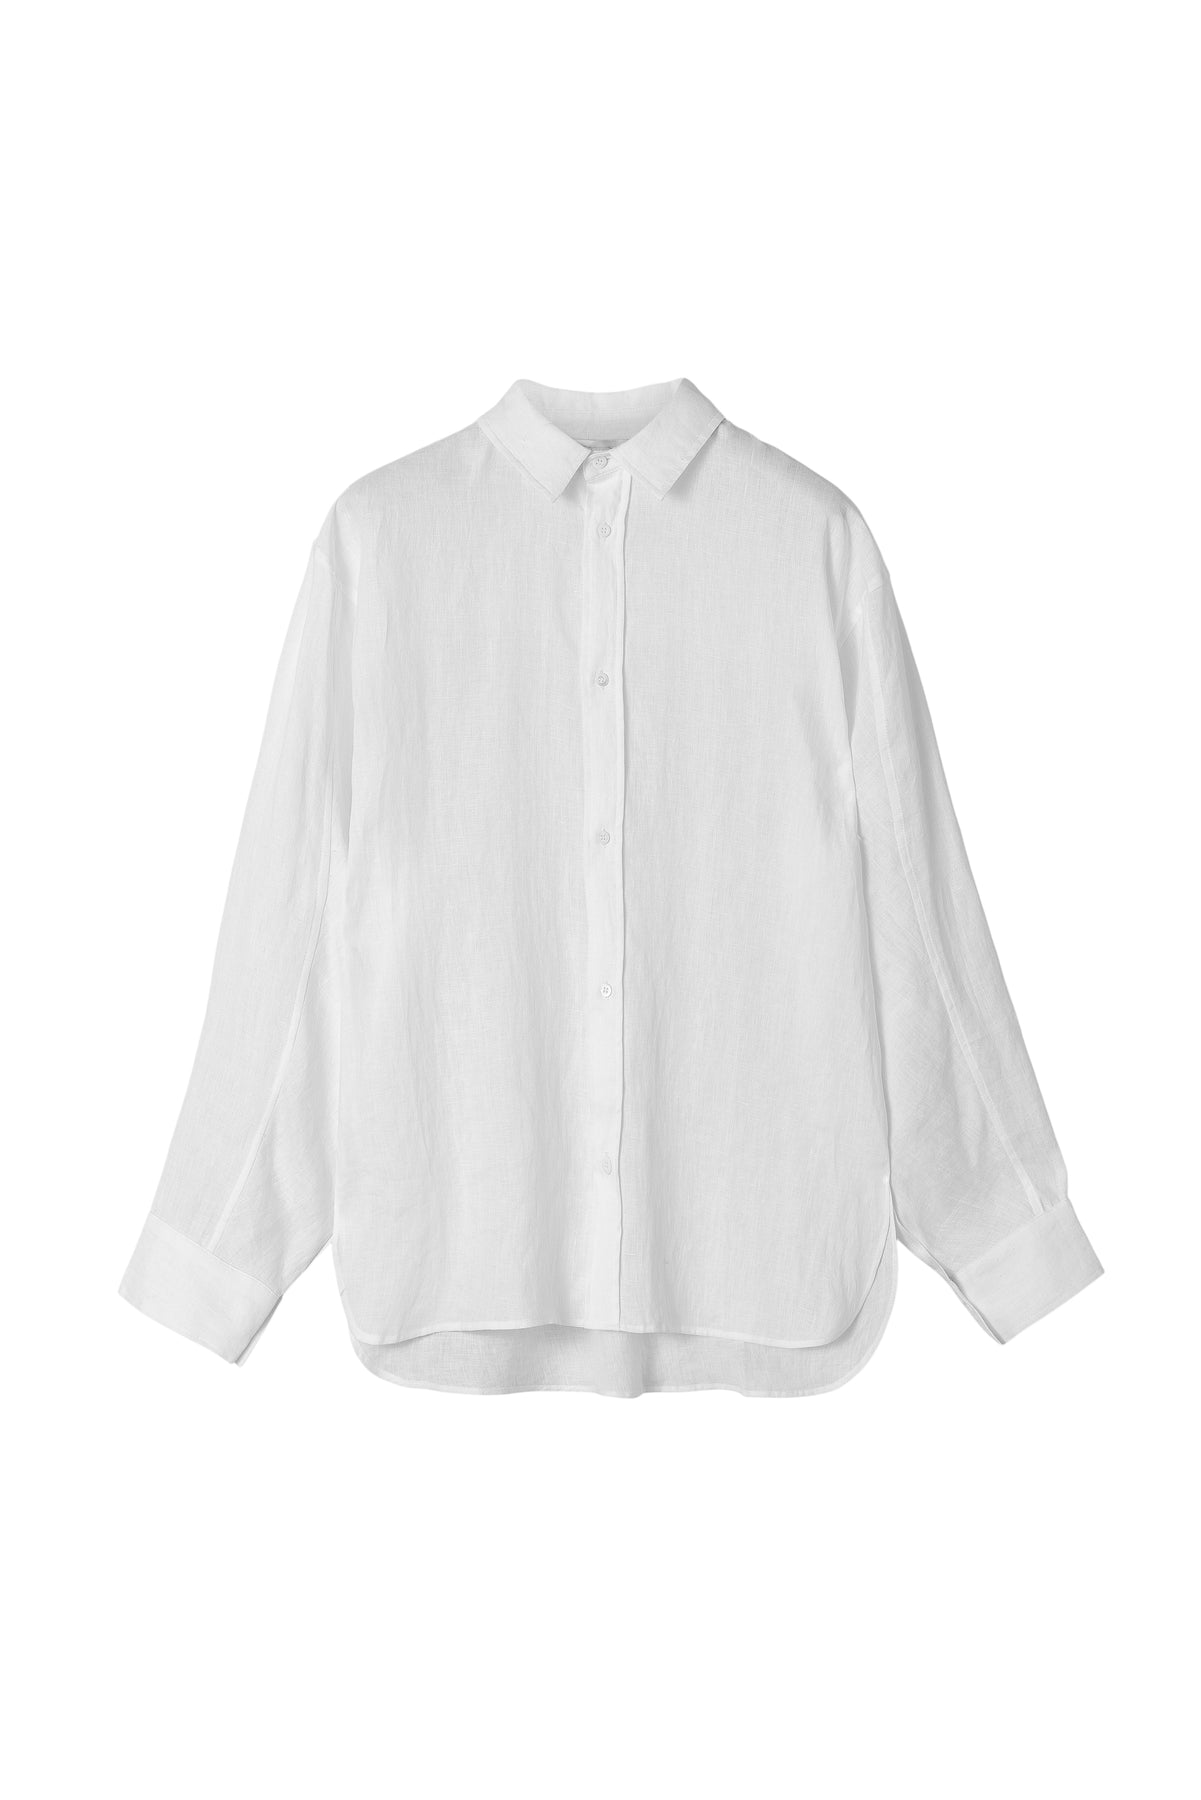 Linen Coastal Shirt - Jet Stream White